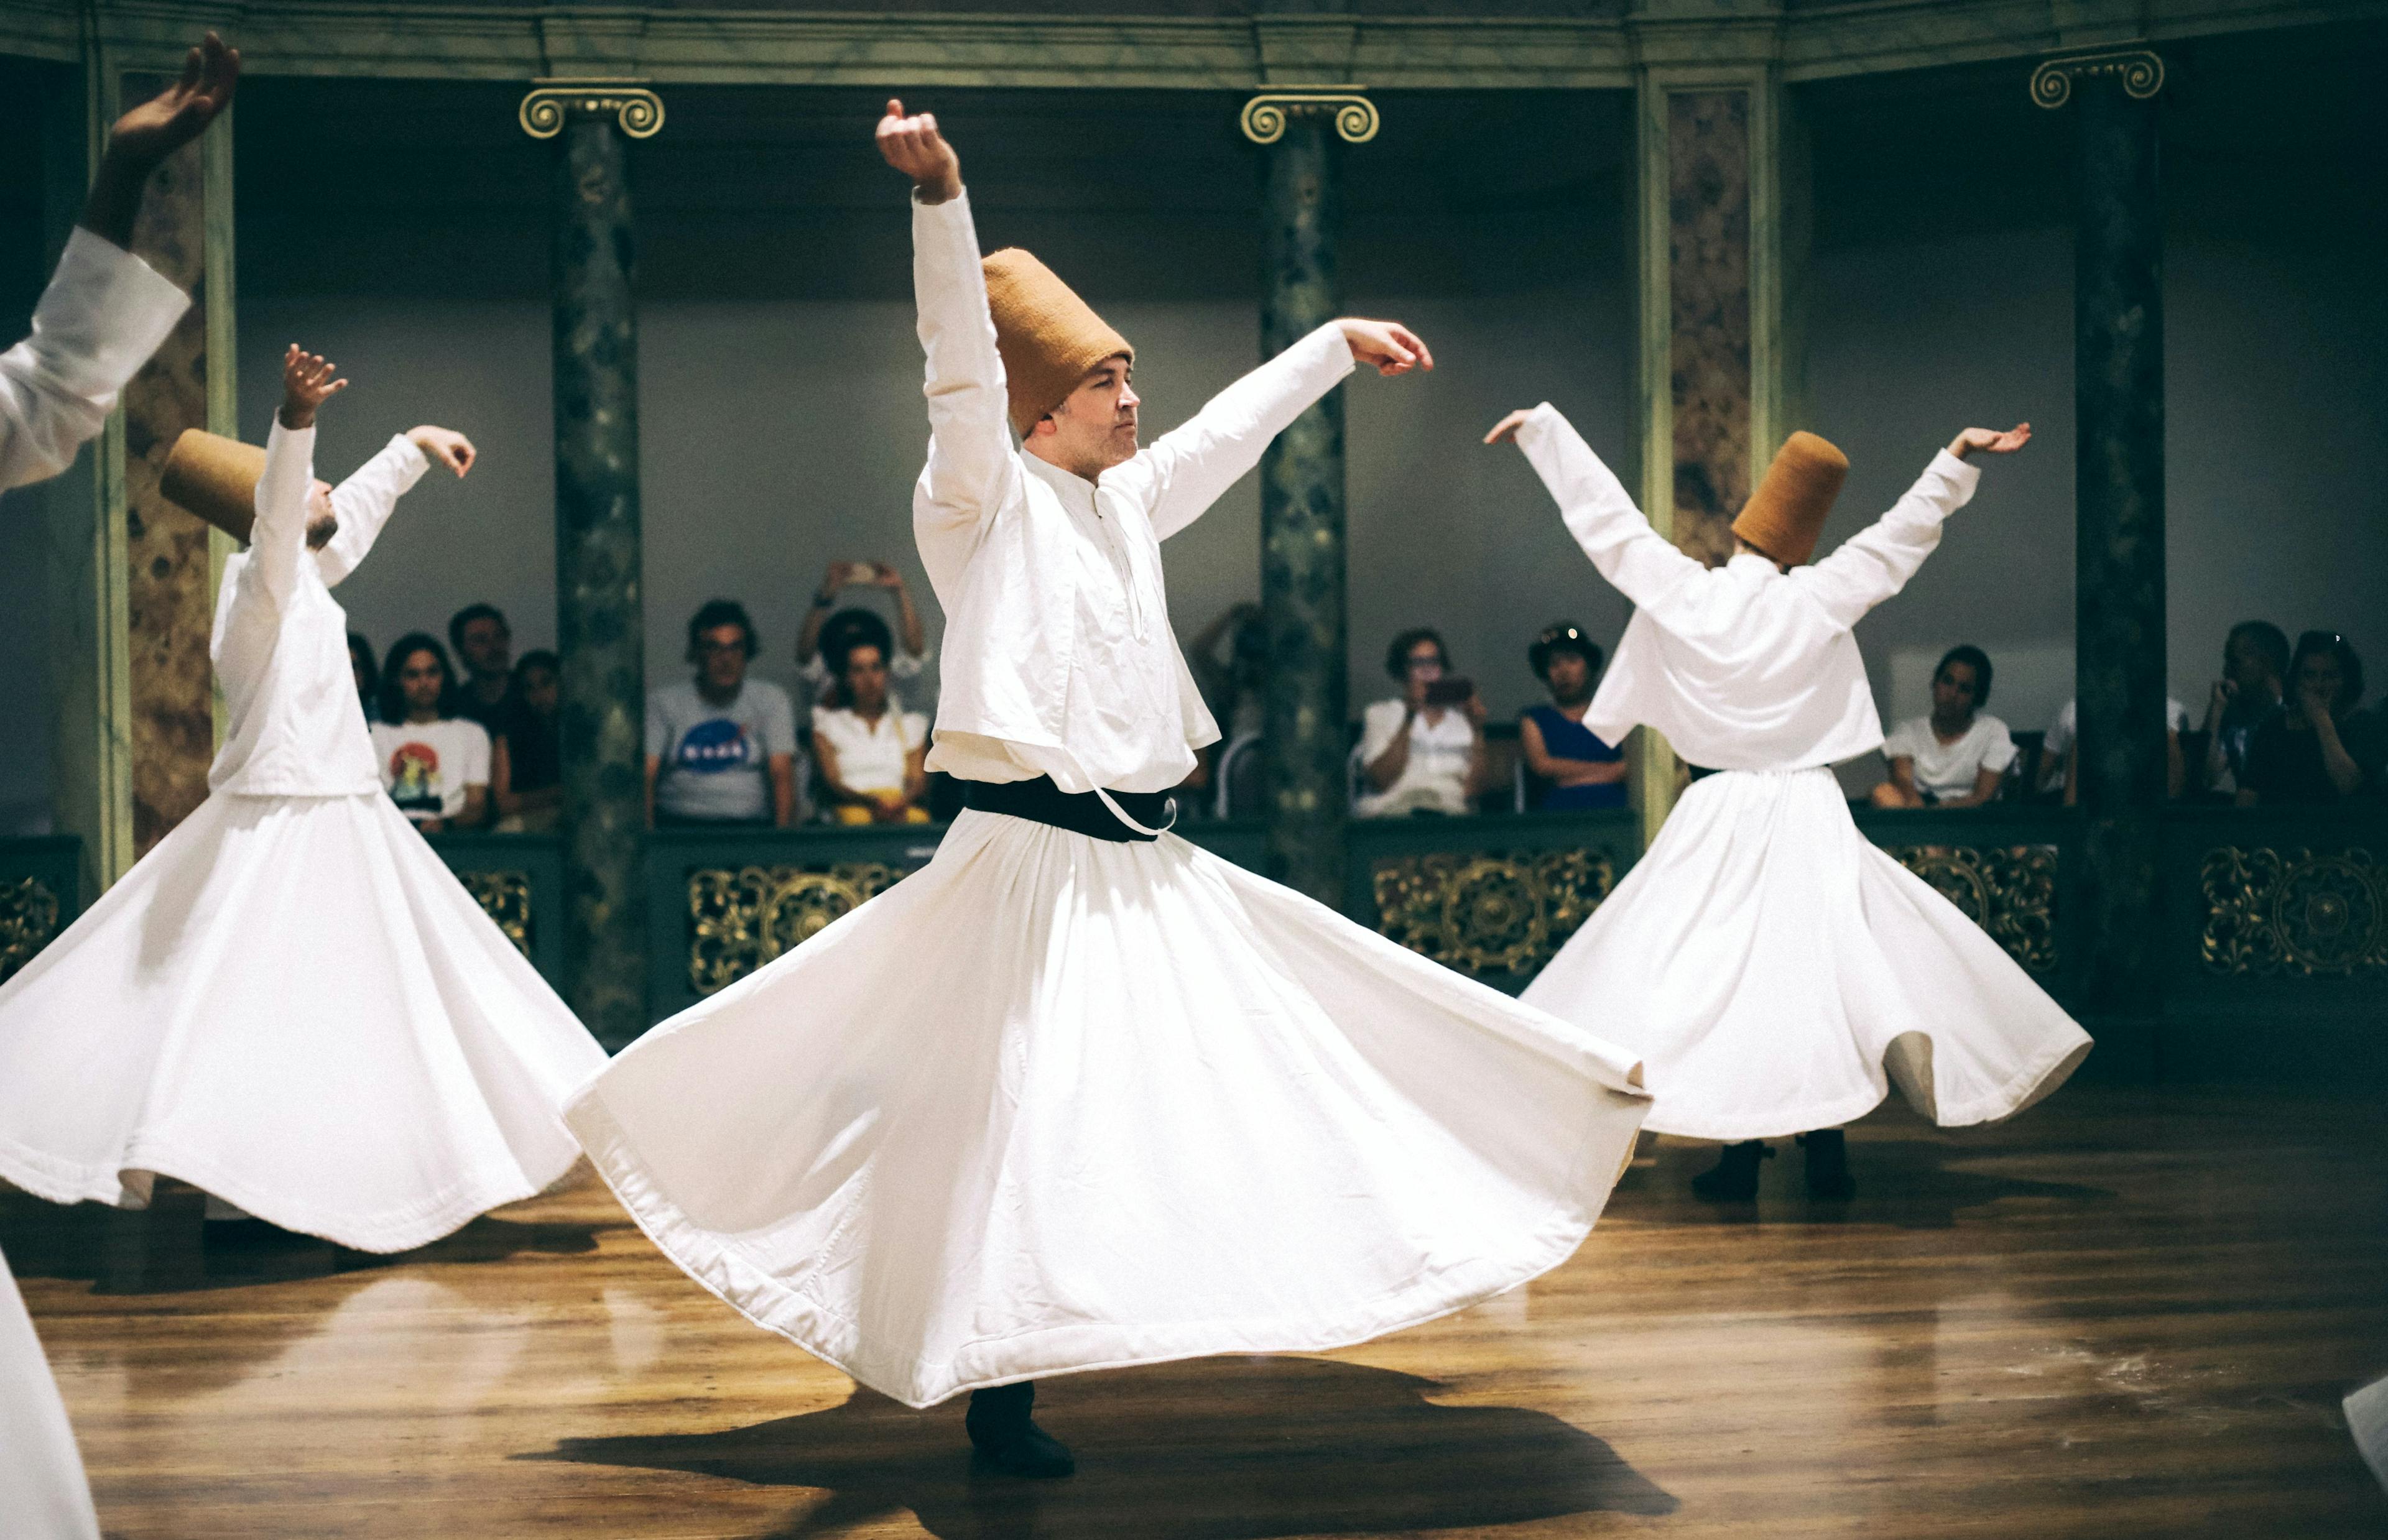 Dancing dervishes in Turkey.